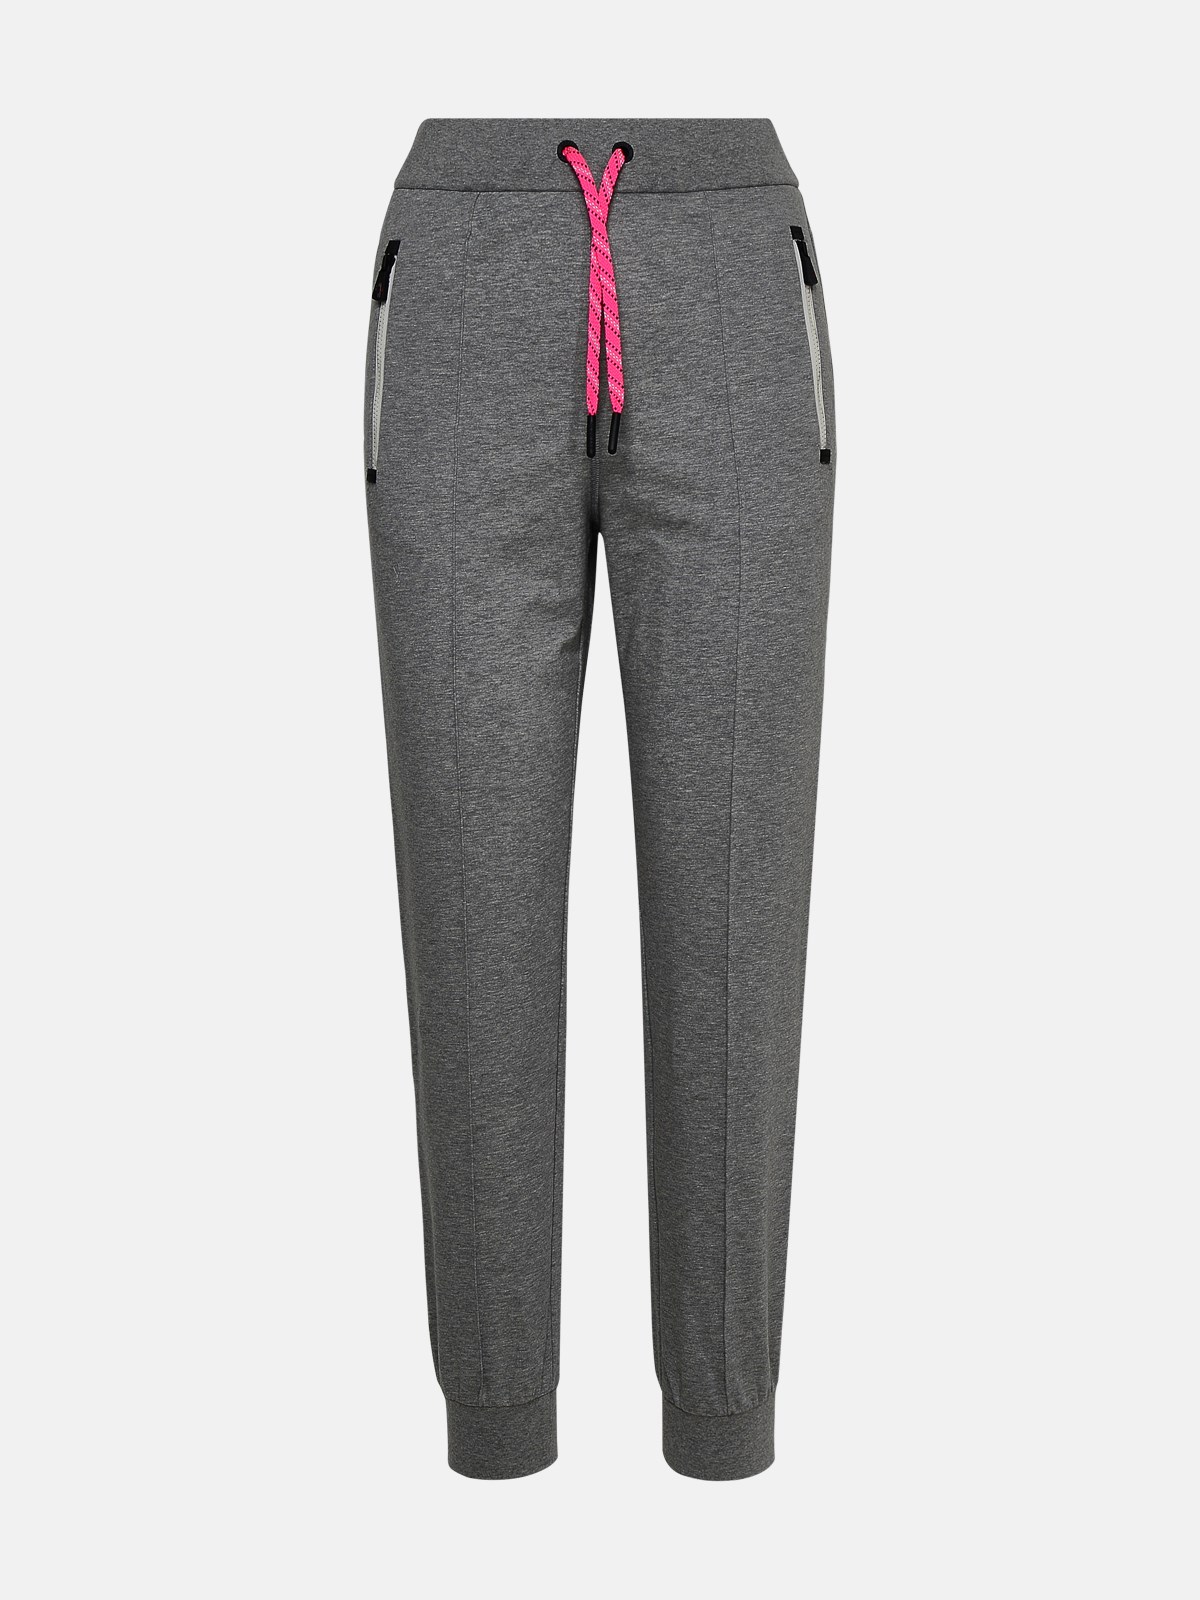 Moncler Grenoble Gray Cotton Sporty Pants